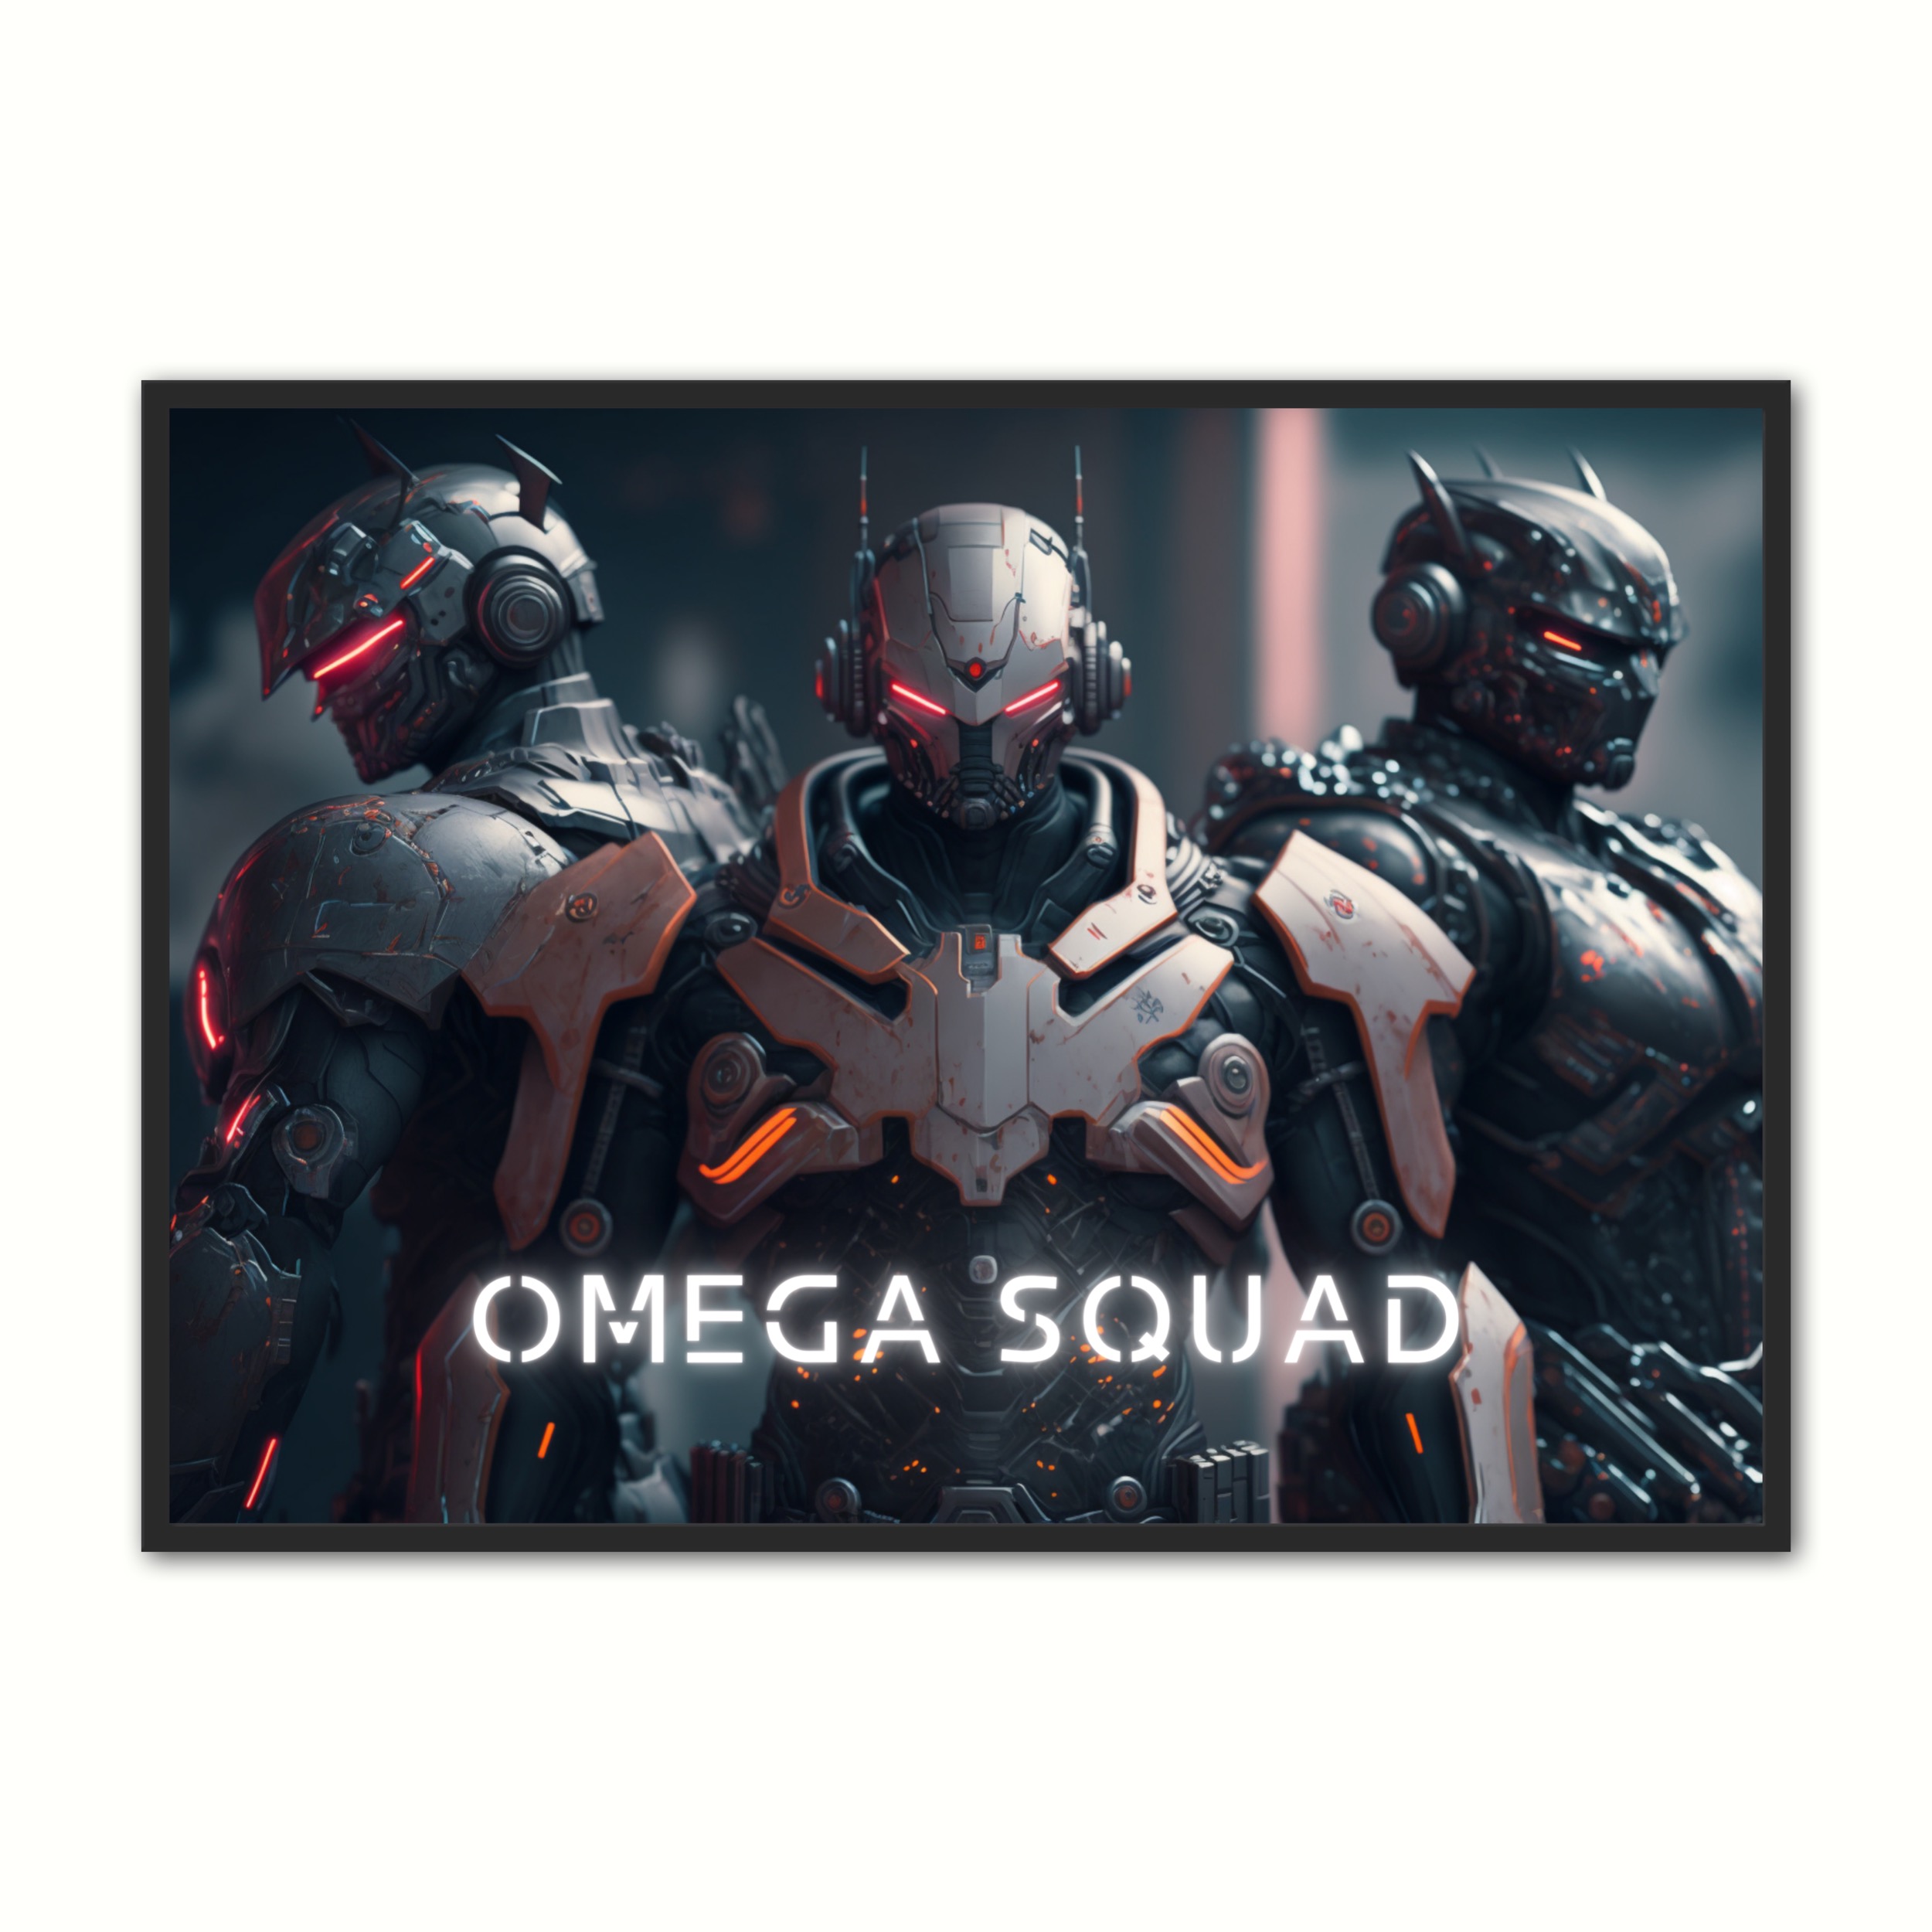 Billede af Plakat med Omega Squad - Android 21 x 29,7 cm (A4)